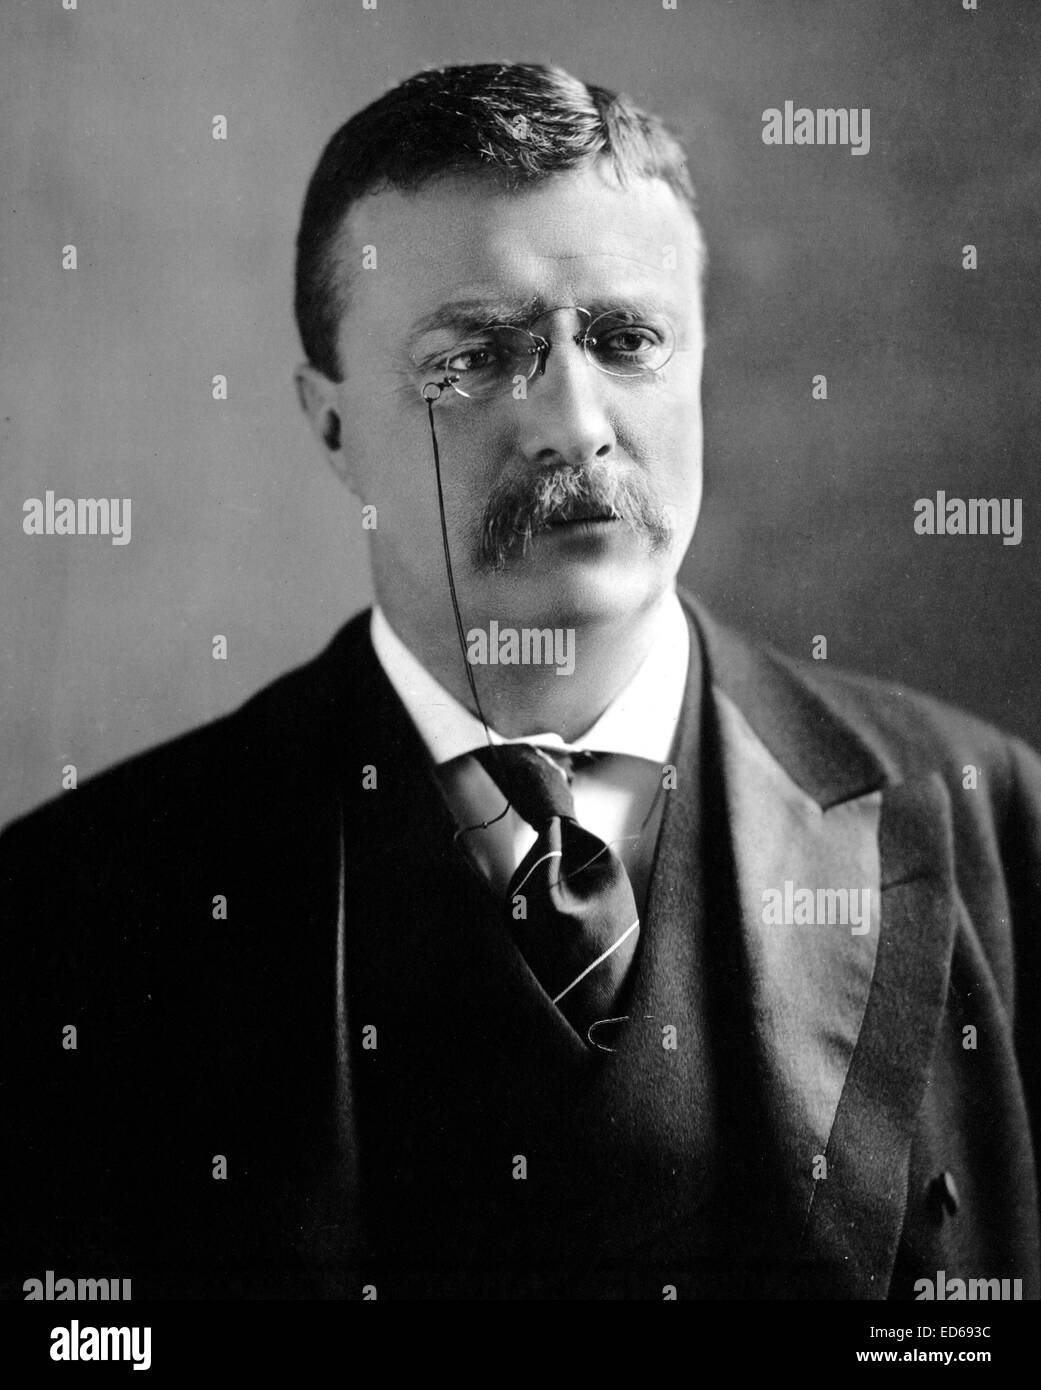 Theodore Roosevelt, le 22 février 1902, tirage photographique Banque D'Images